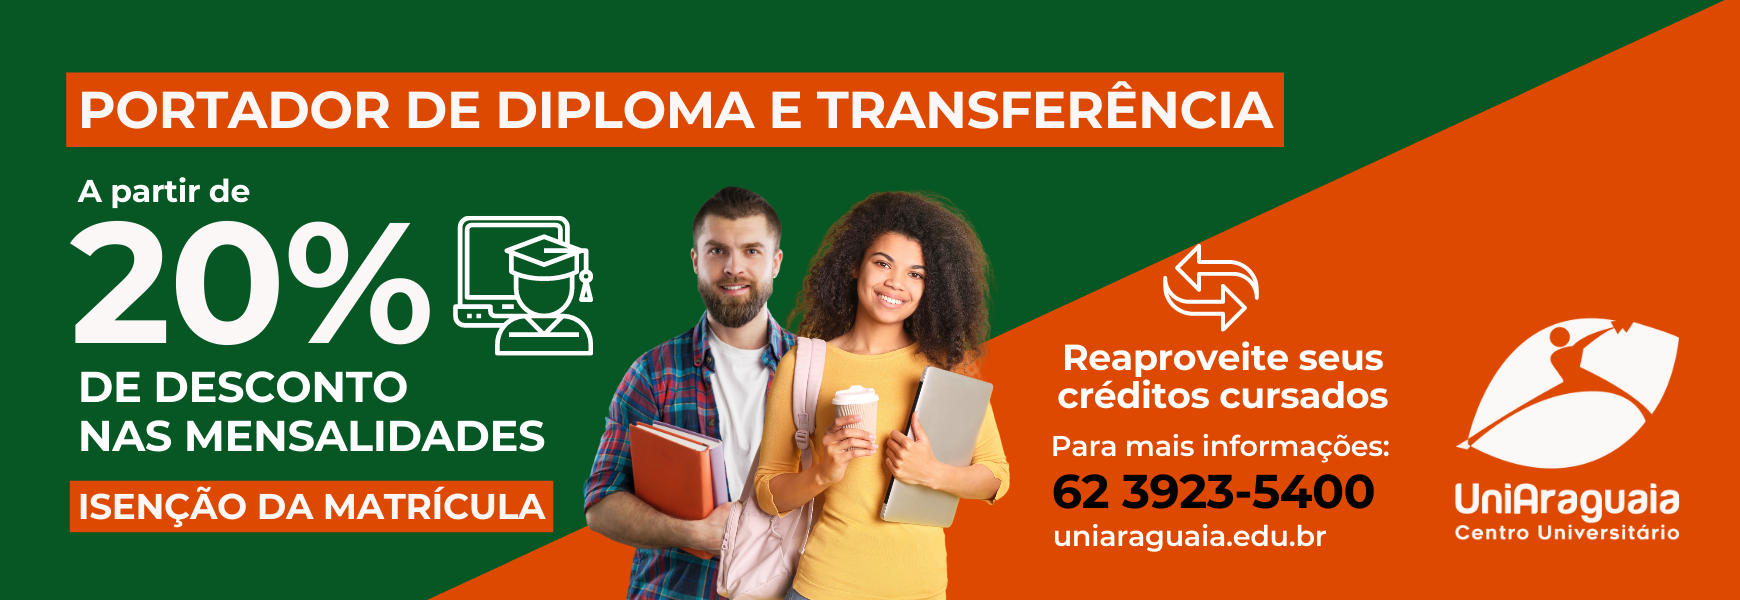 UniAraguaia - Transferencia e Portador de Diploma